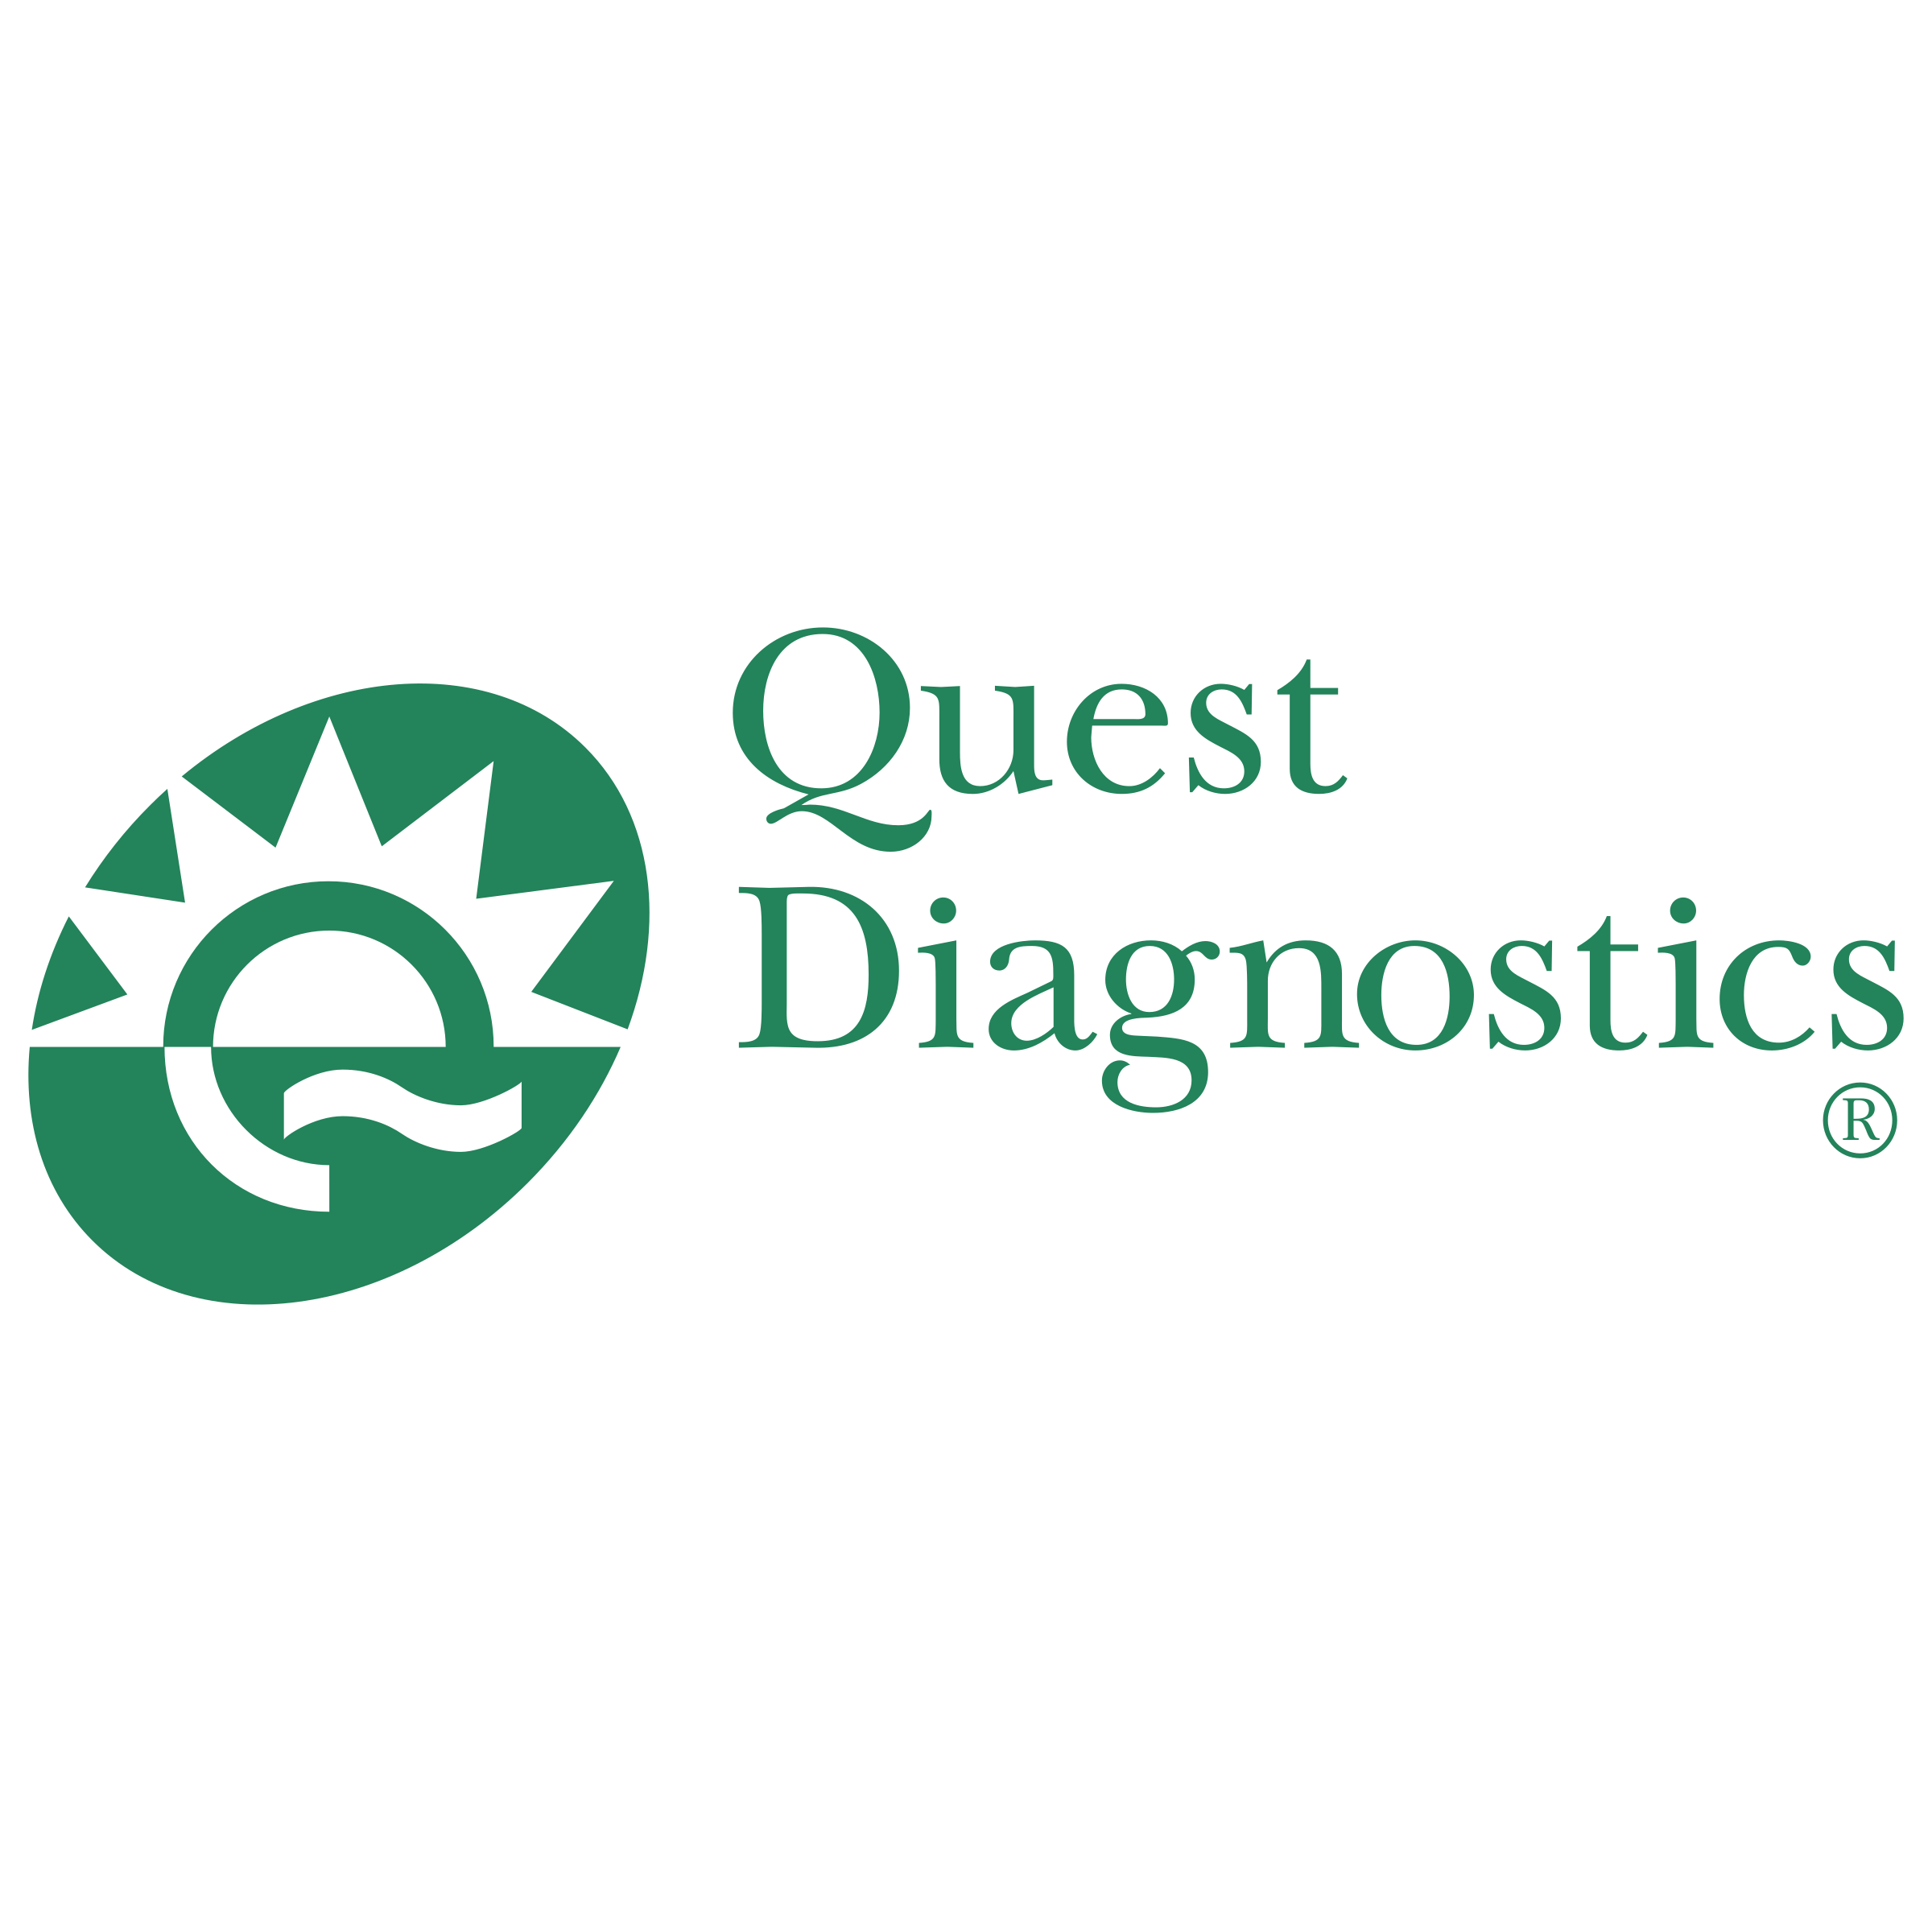 quest-diagnostics-1-logo-png-transparent.png